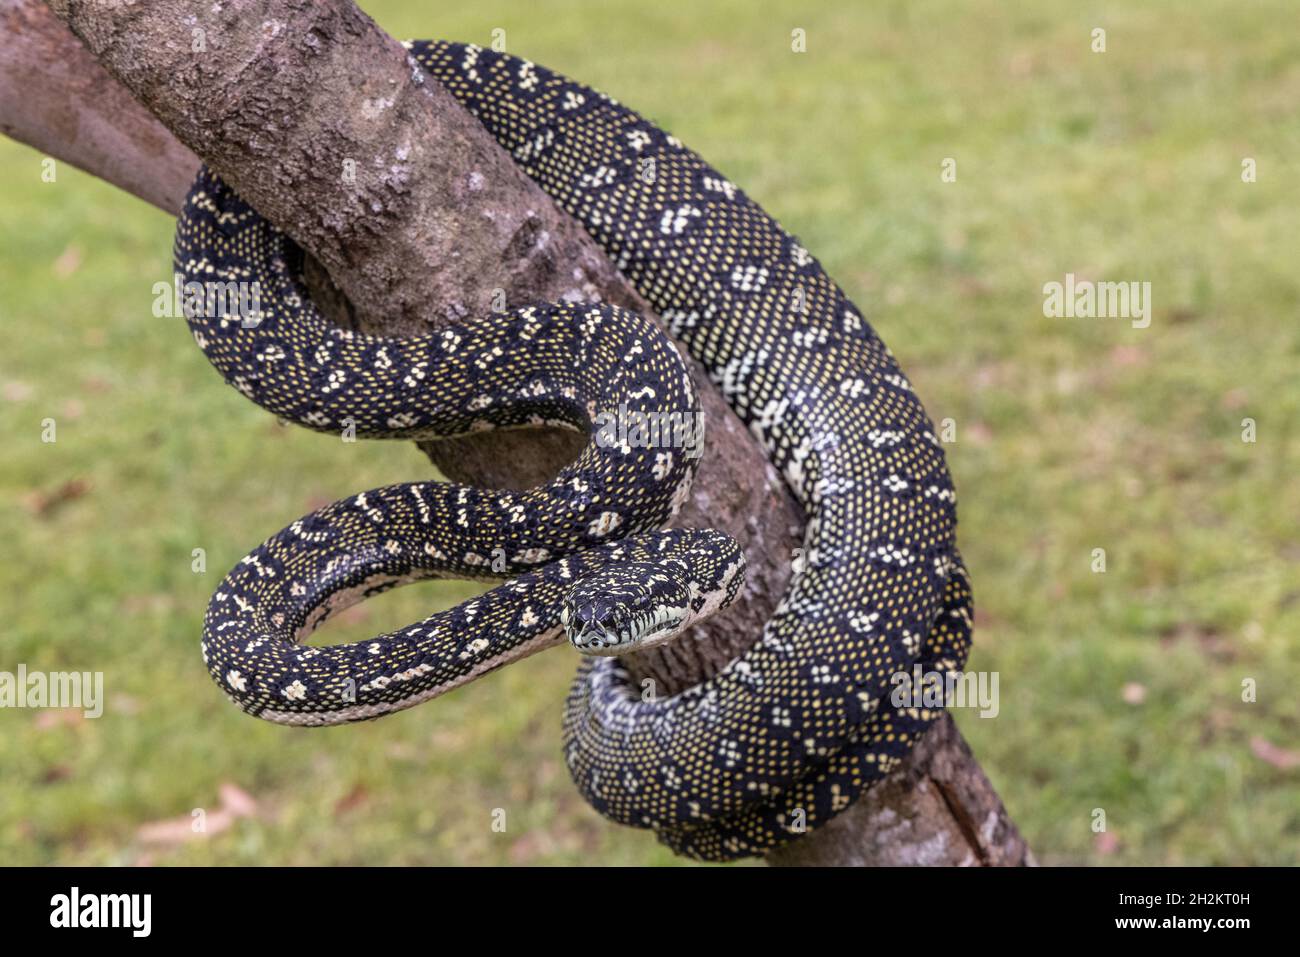 Australian non-venomous Diamond Python Stock Photo